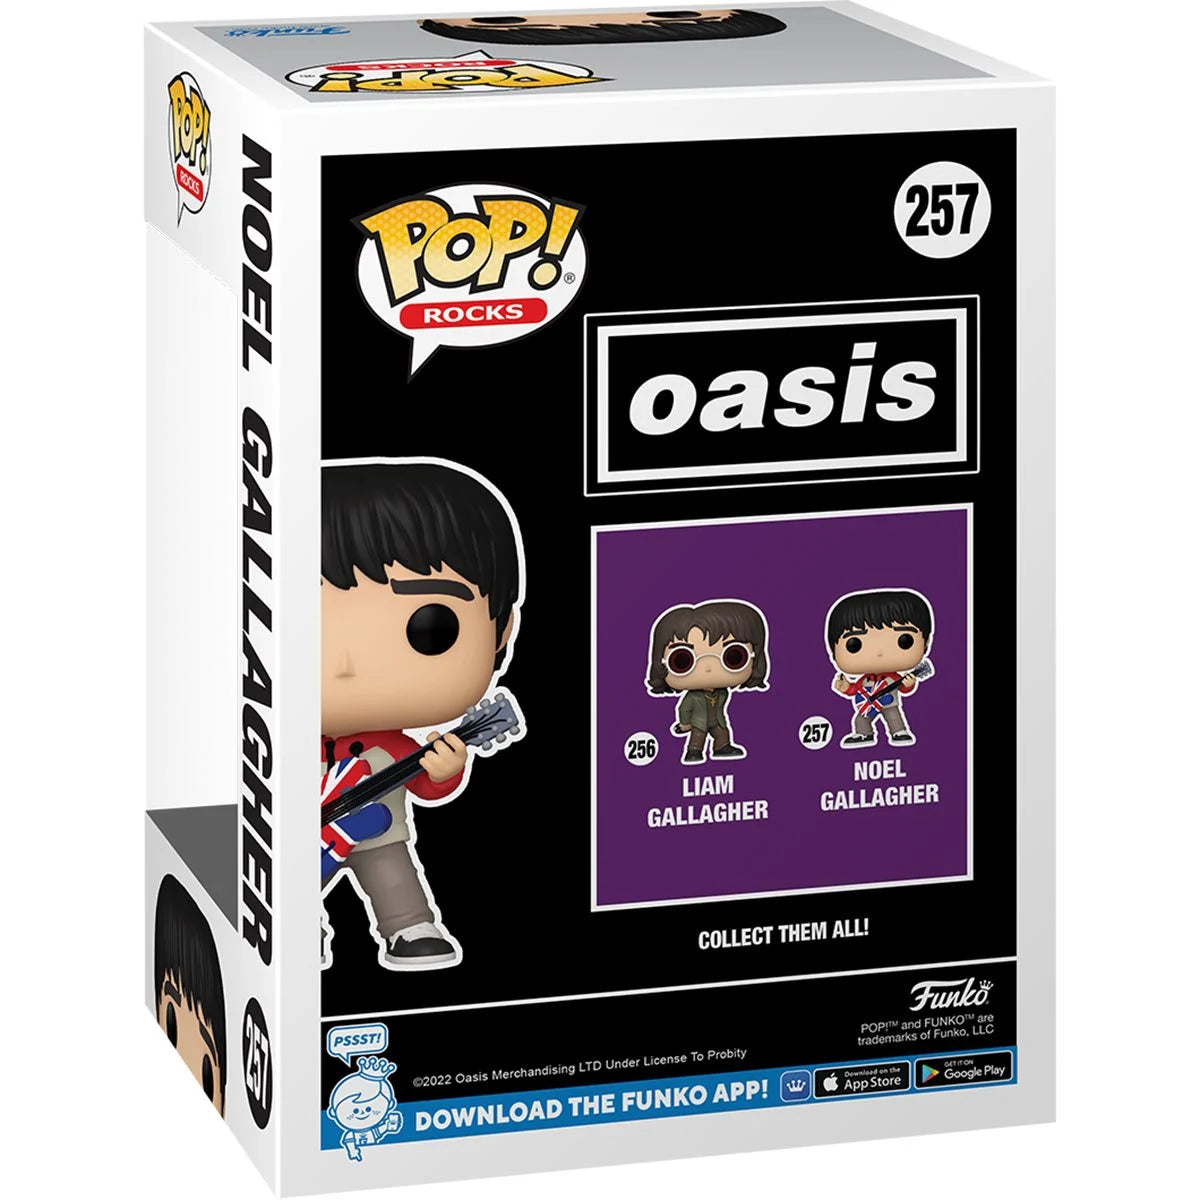 Oasis Noel Gallagher Pop! Vinyl Figure - D-Pop